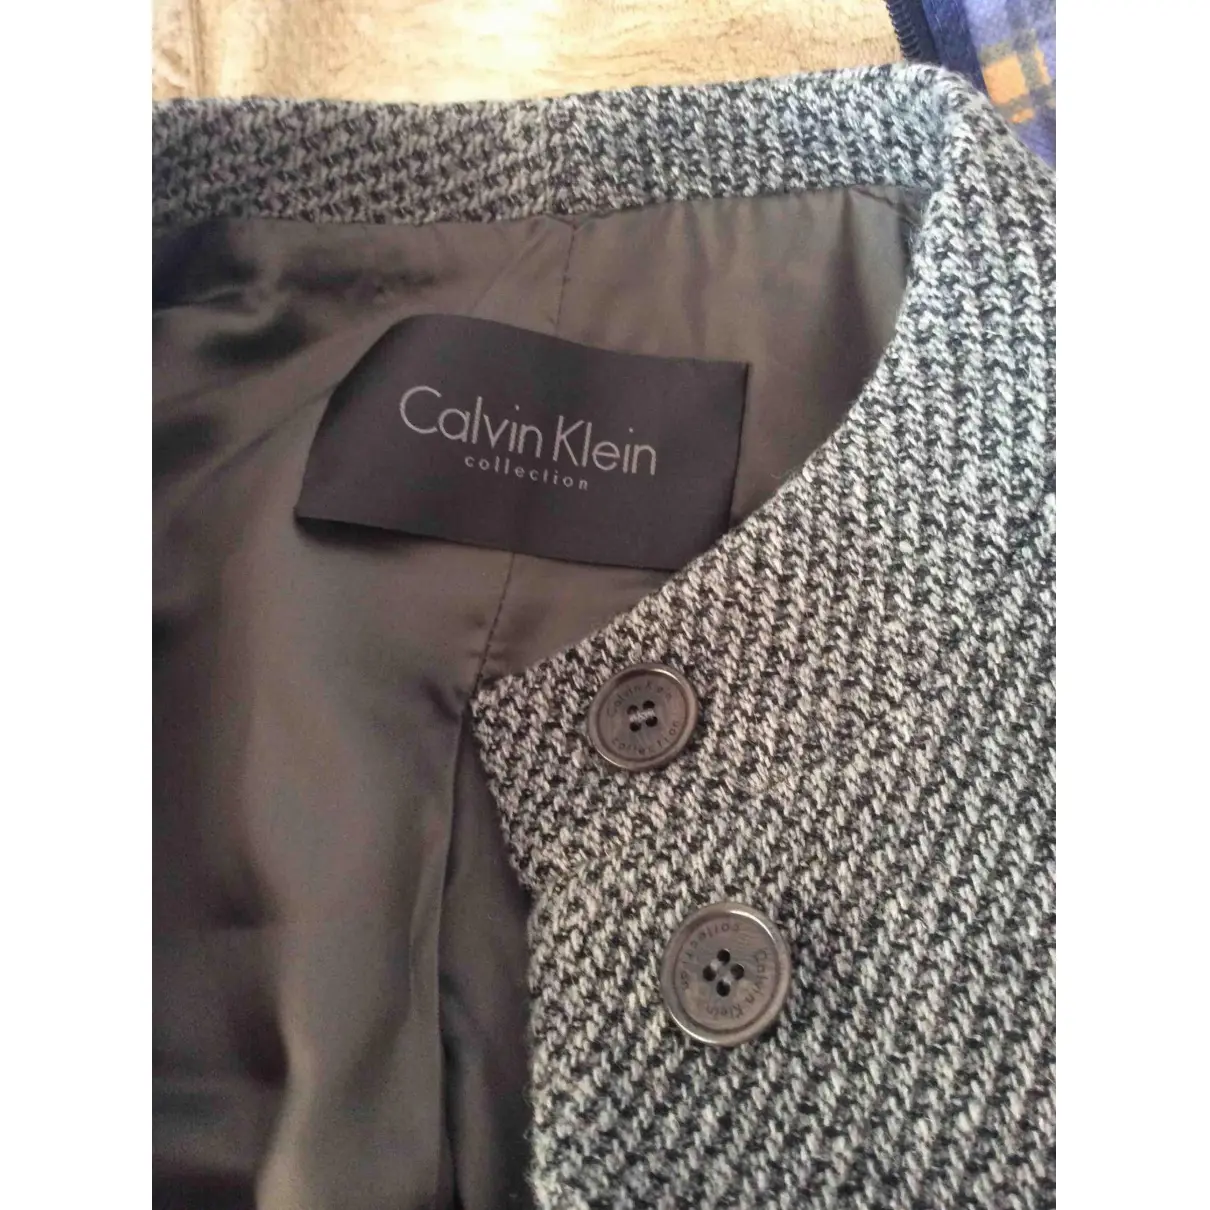 Buy Calvin Klein Collection Wool coat online